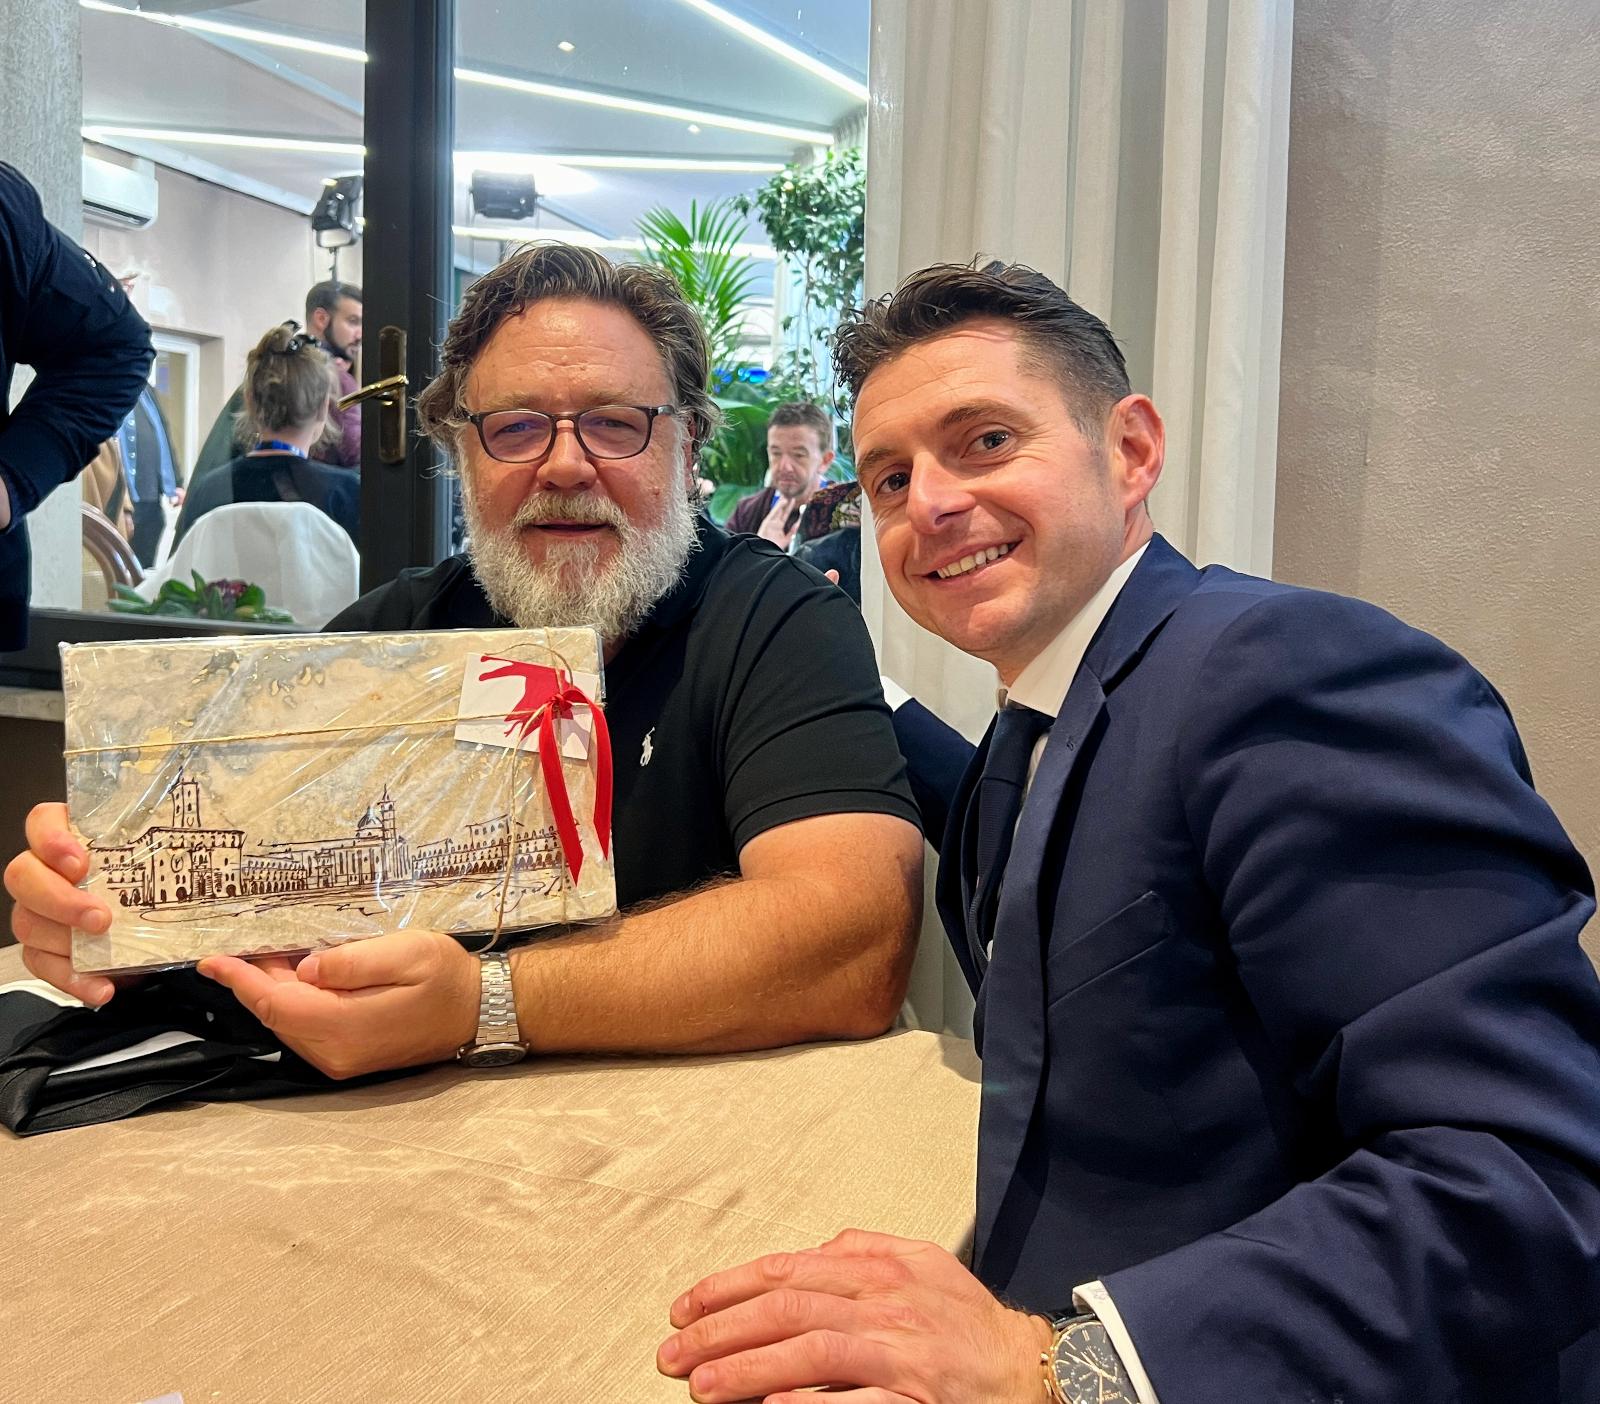 Il sindaco Marco Fioravanti consegna a Russel Crowe la targa di conferimento della cittadinanza onoraria e il simbolo in travertino della città di Ascoli Piceno